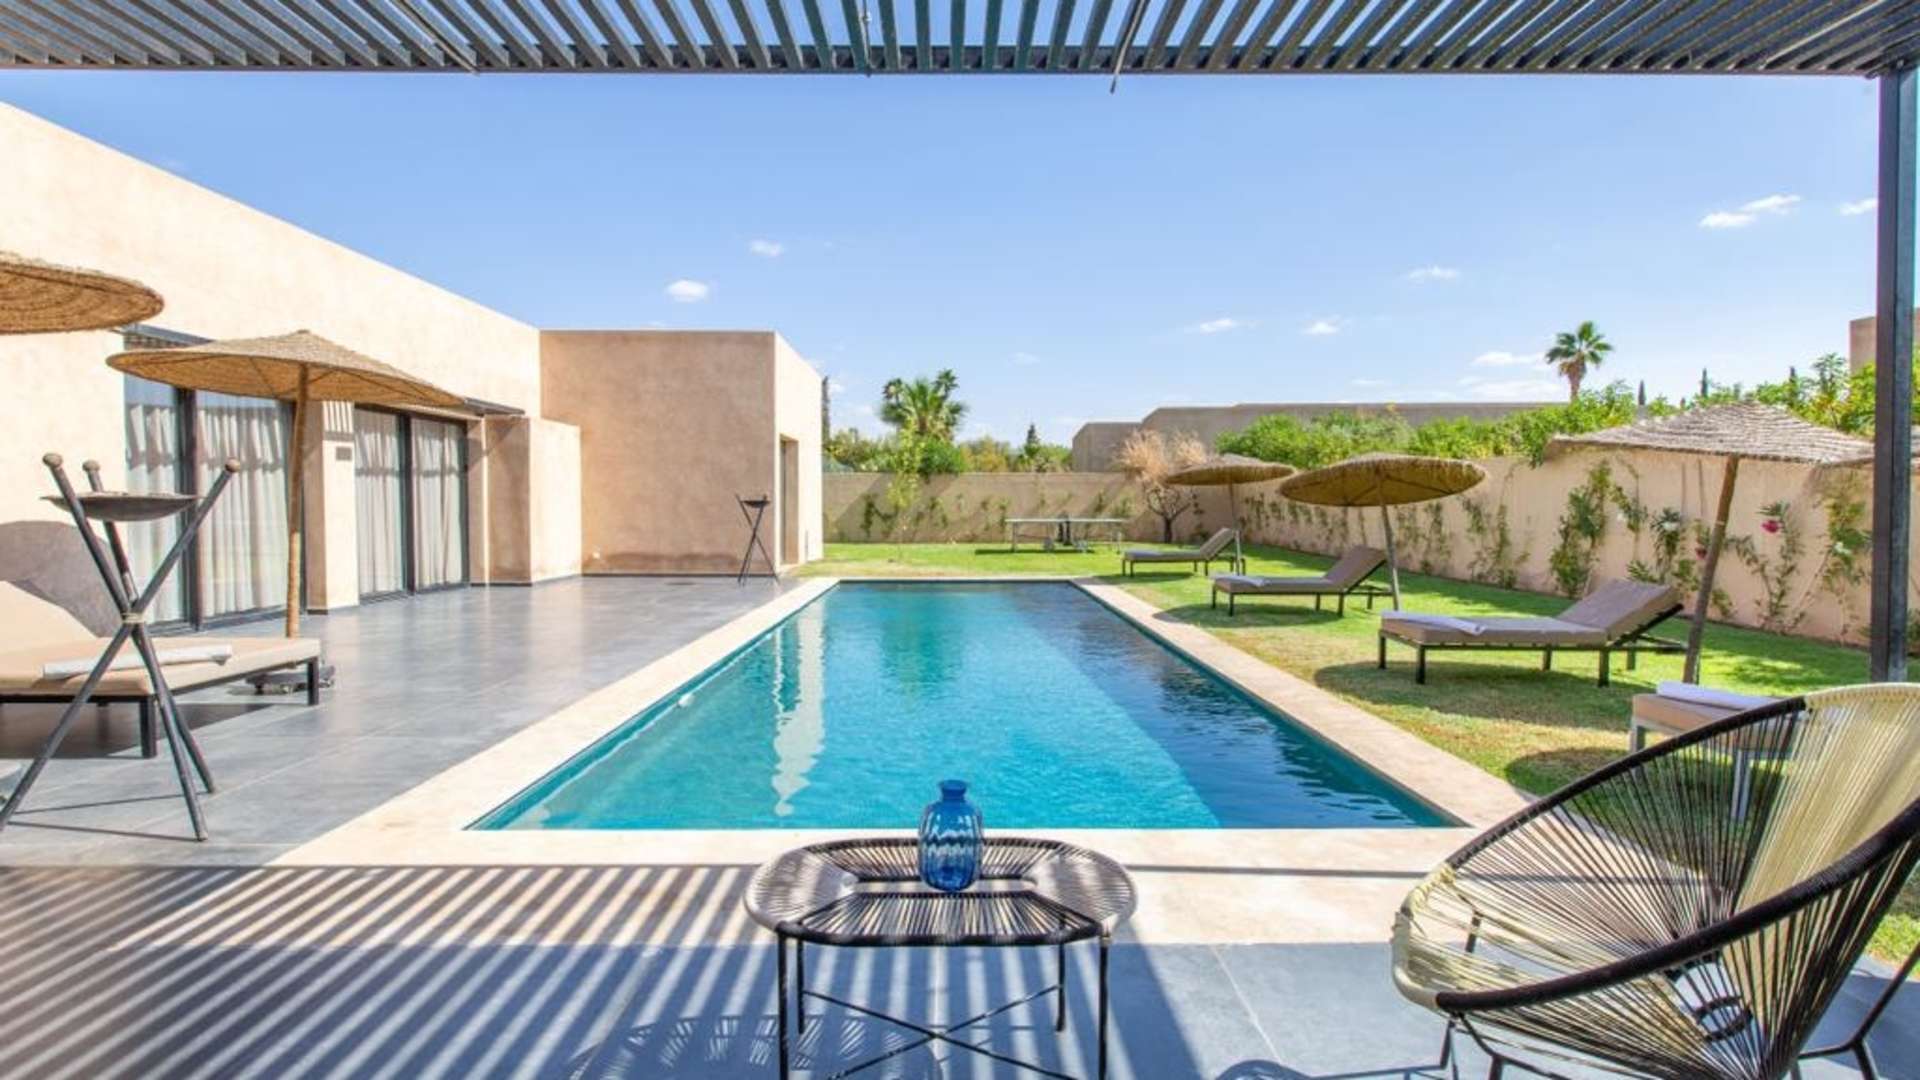 Location de vacances,Villa,Villa moderne de plain-pied  à louer pour vos vacances à Marrakech,Marrakech,Route de l'Ourika